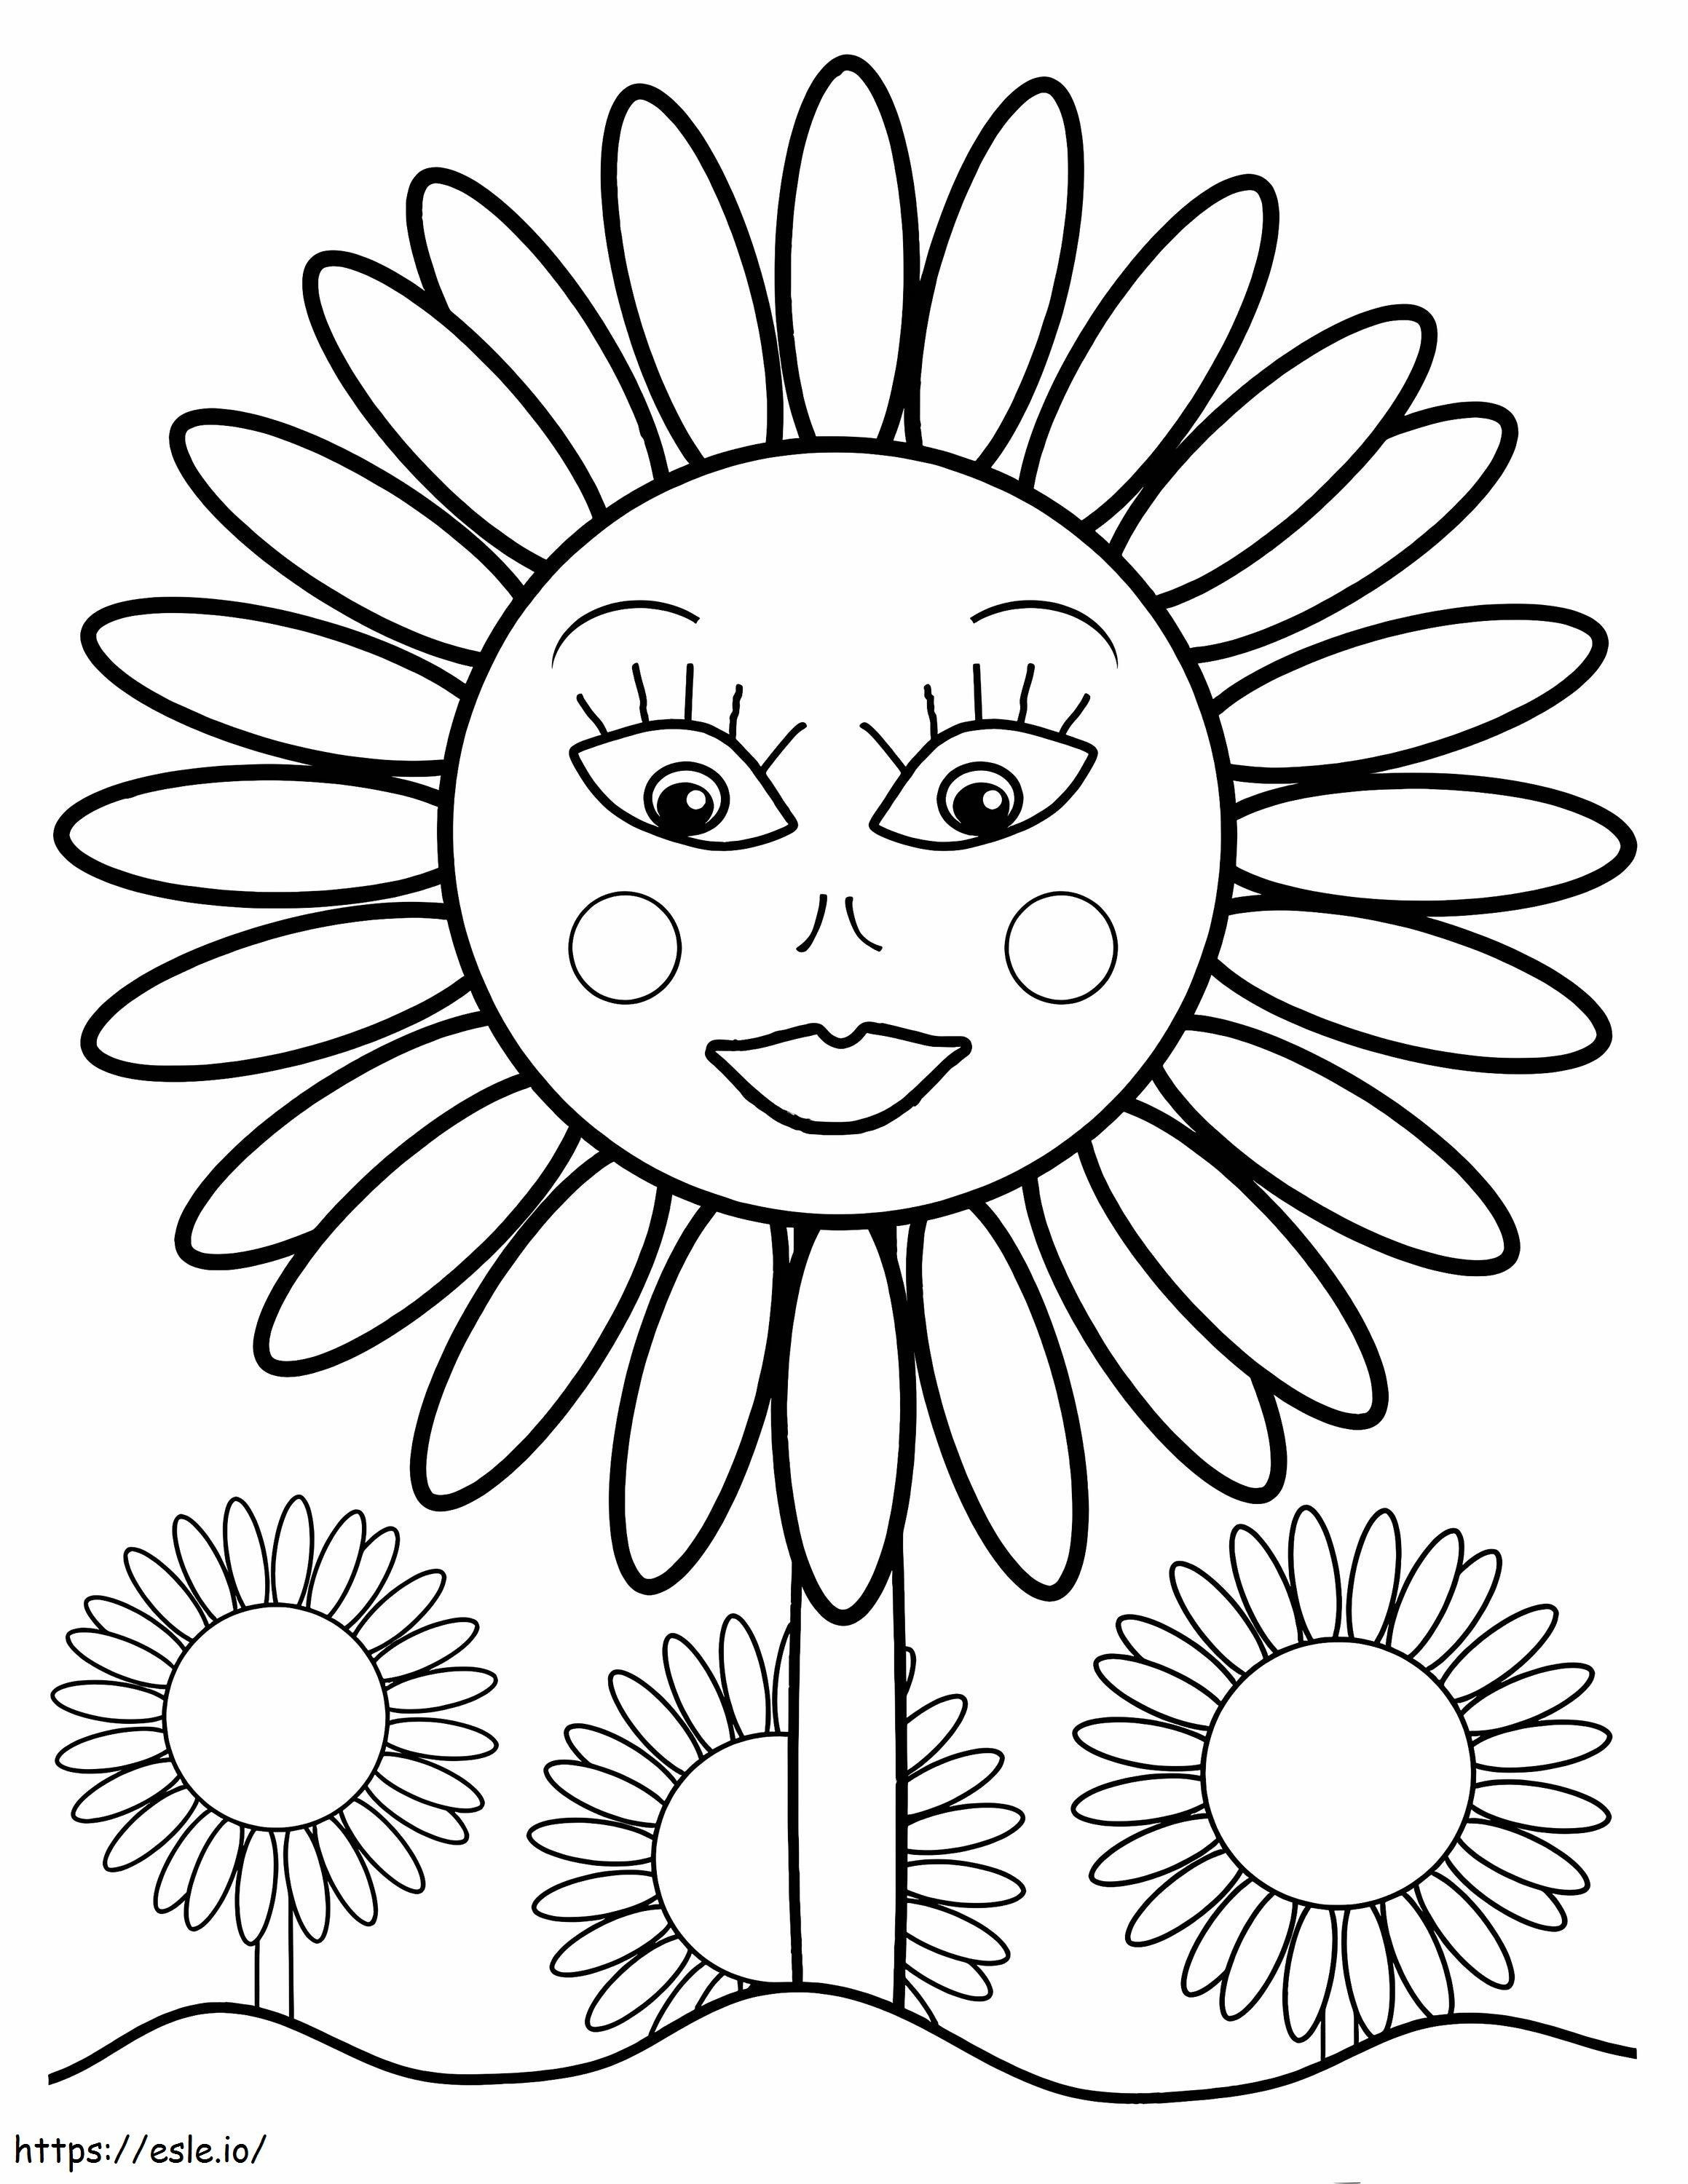 1539915926 Słonecznik do bezpłatnego wydruku dla dzieci Obrazy słonecznika Do pokolorowania obrazów słonecznika Do pokolorowania 2 kolorowanka